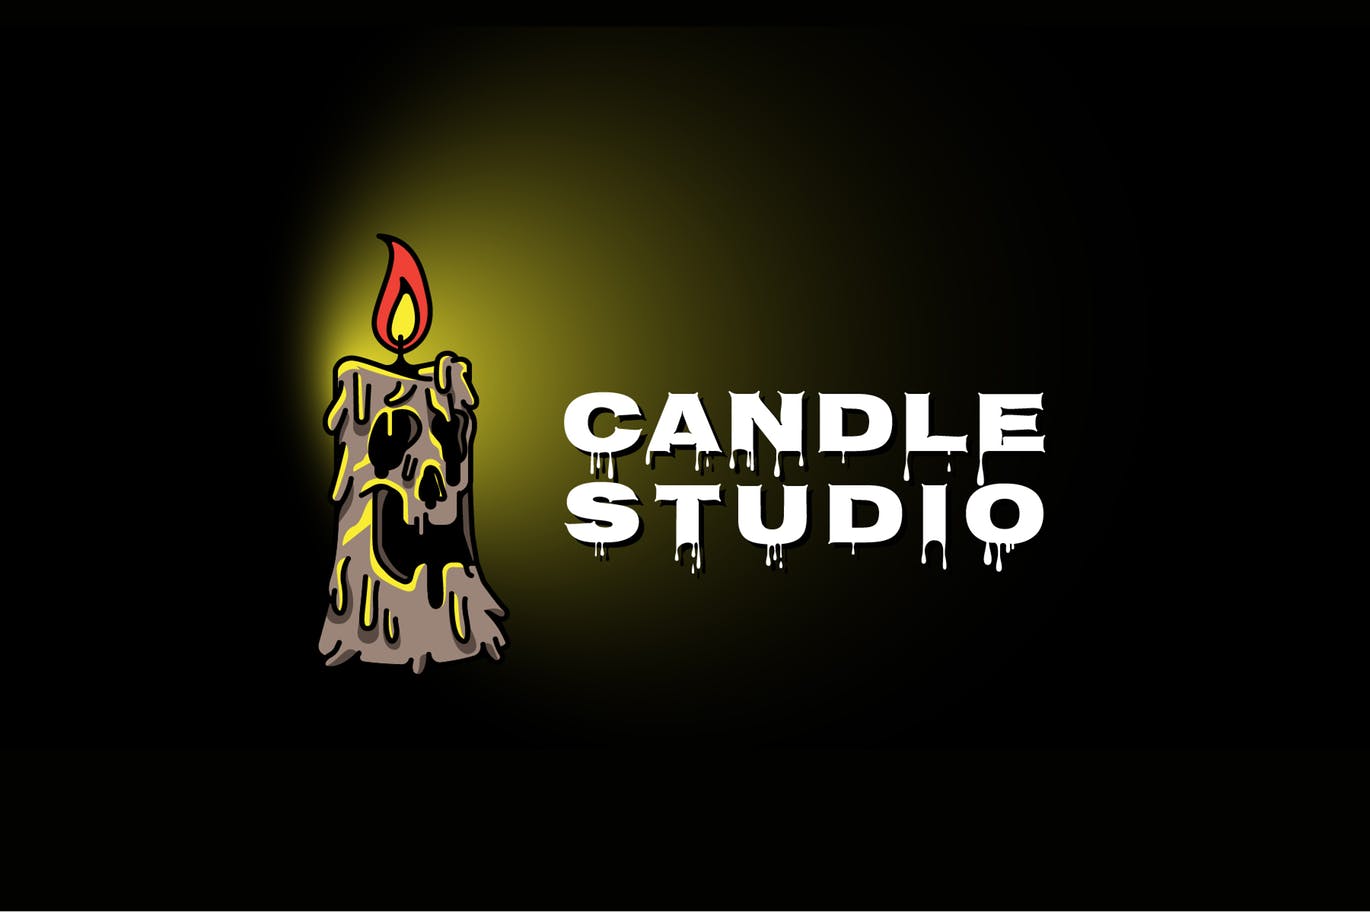 恐怖蜡烛工作室Logo设计第一素材精选模板 Candle Horror Mascot Logo插图